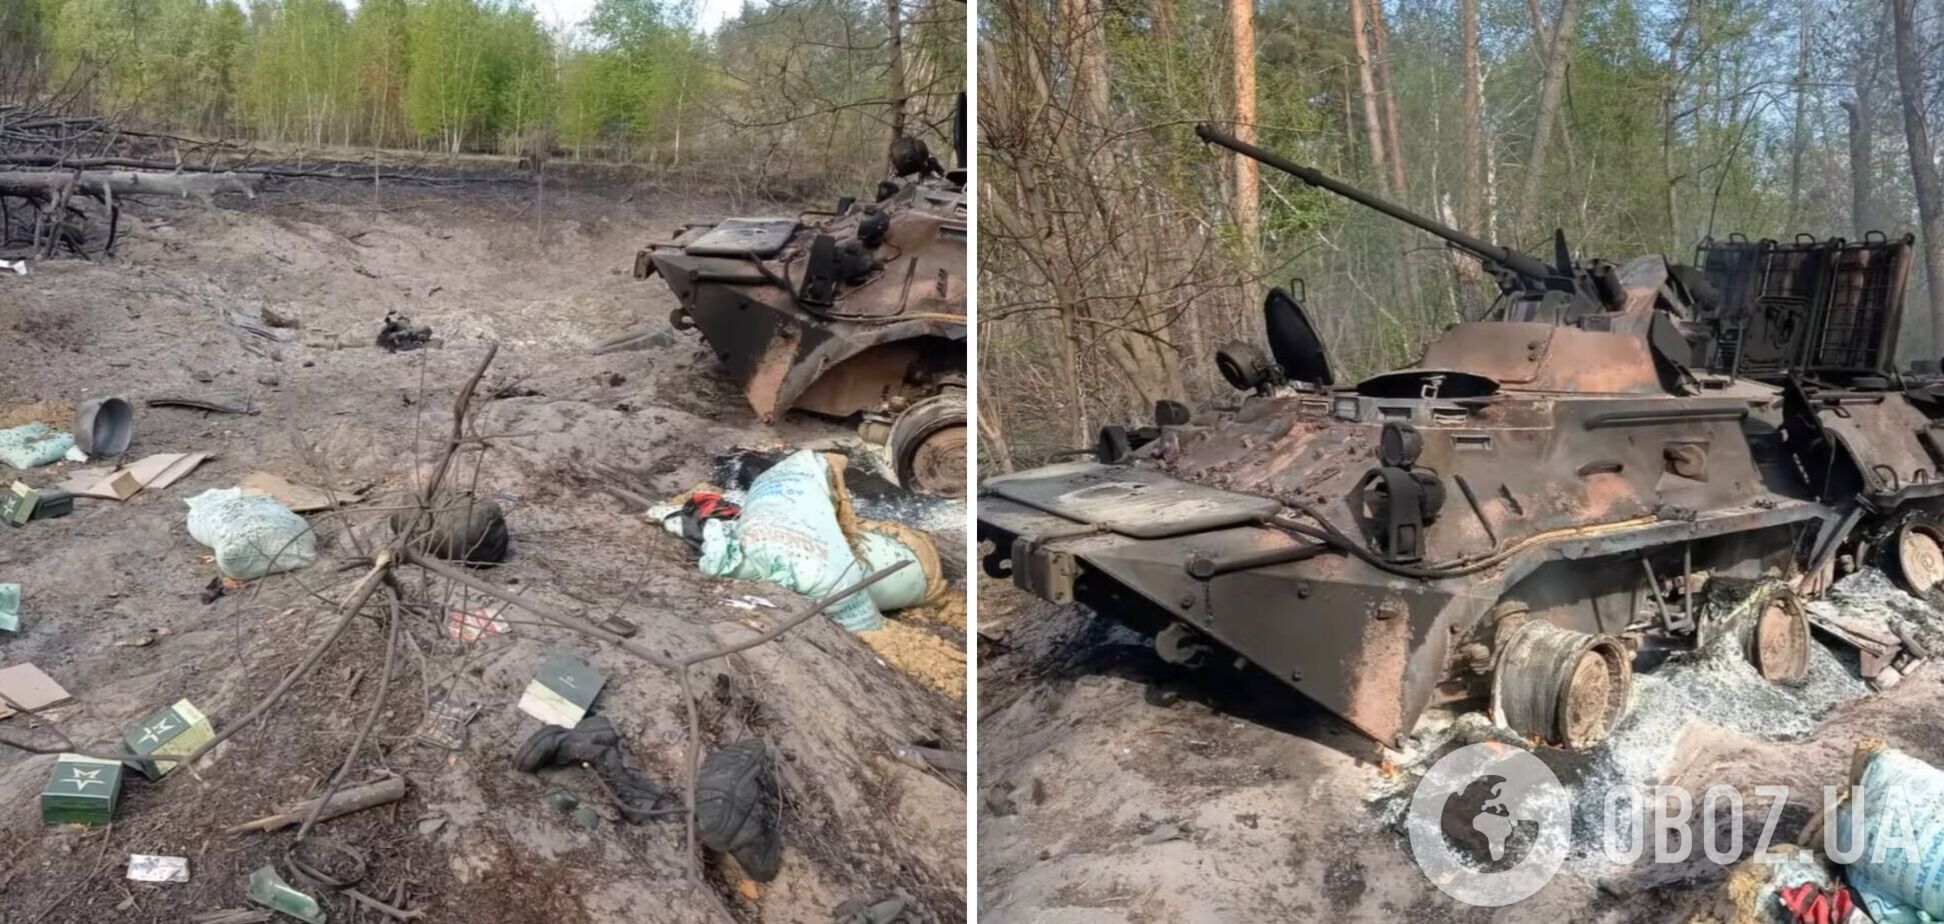 Українські воїни-десантники знищили групу спецпризначенців із Росії. Відео 18+